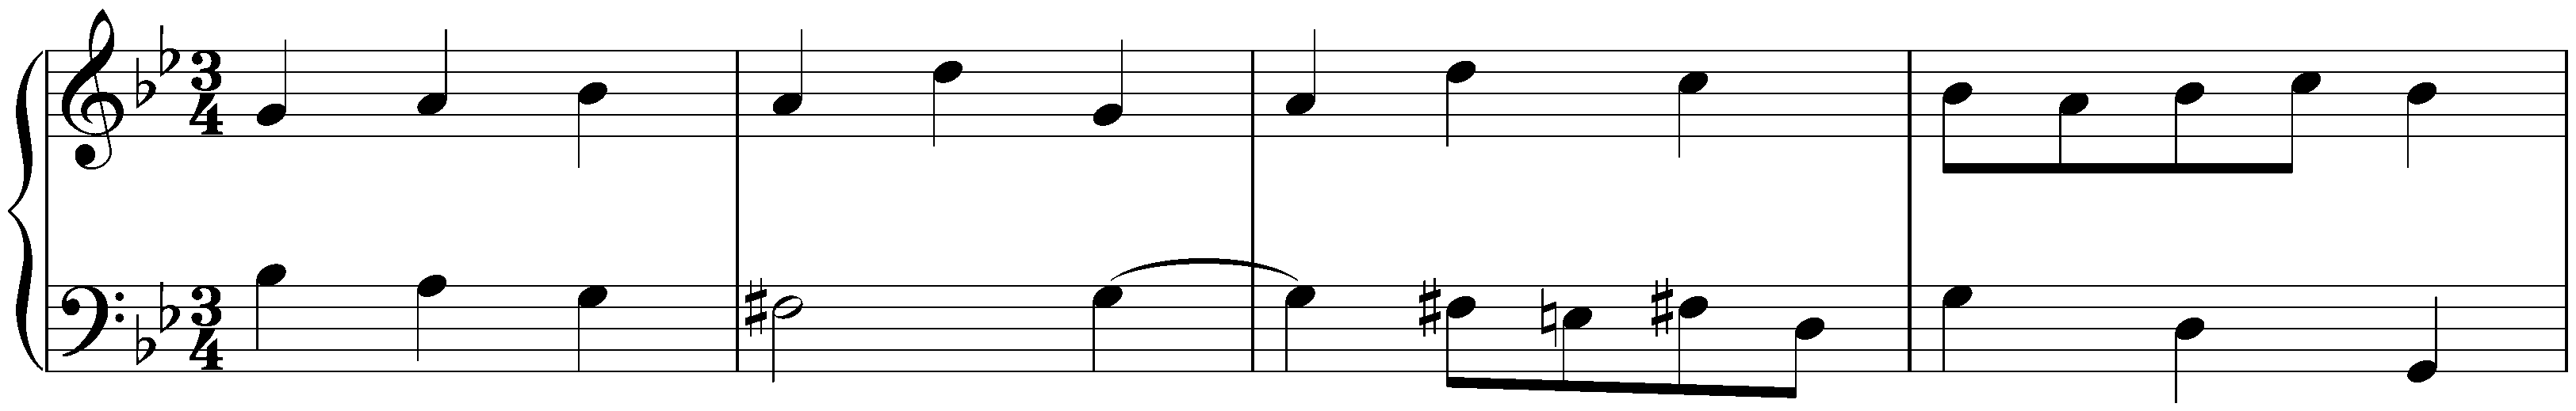 Overture in G minor, BWV 822; 5. Menuet I – Menuet II – Menuet I – Menuet III – Menuet I